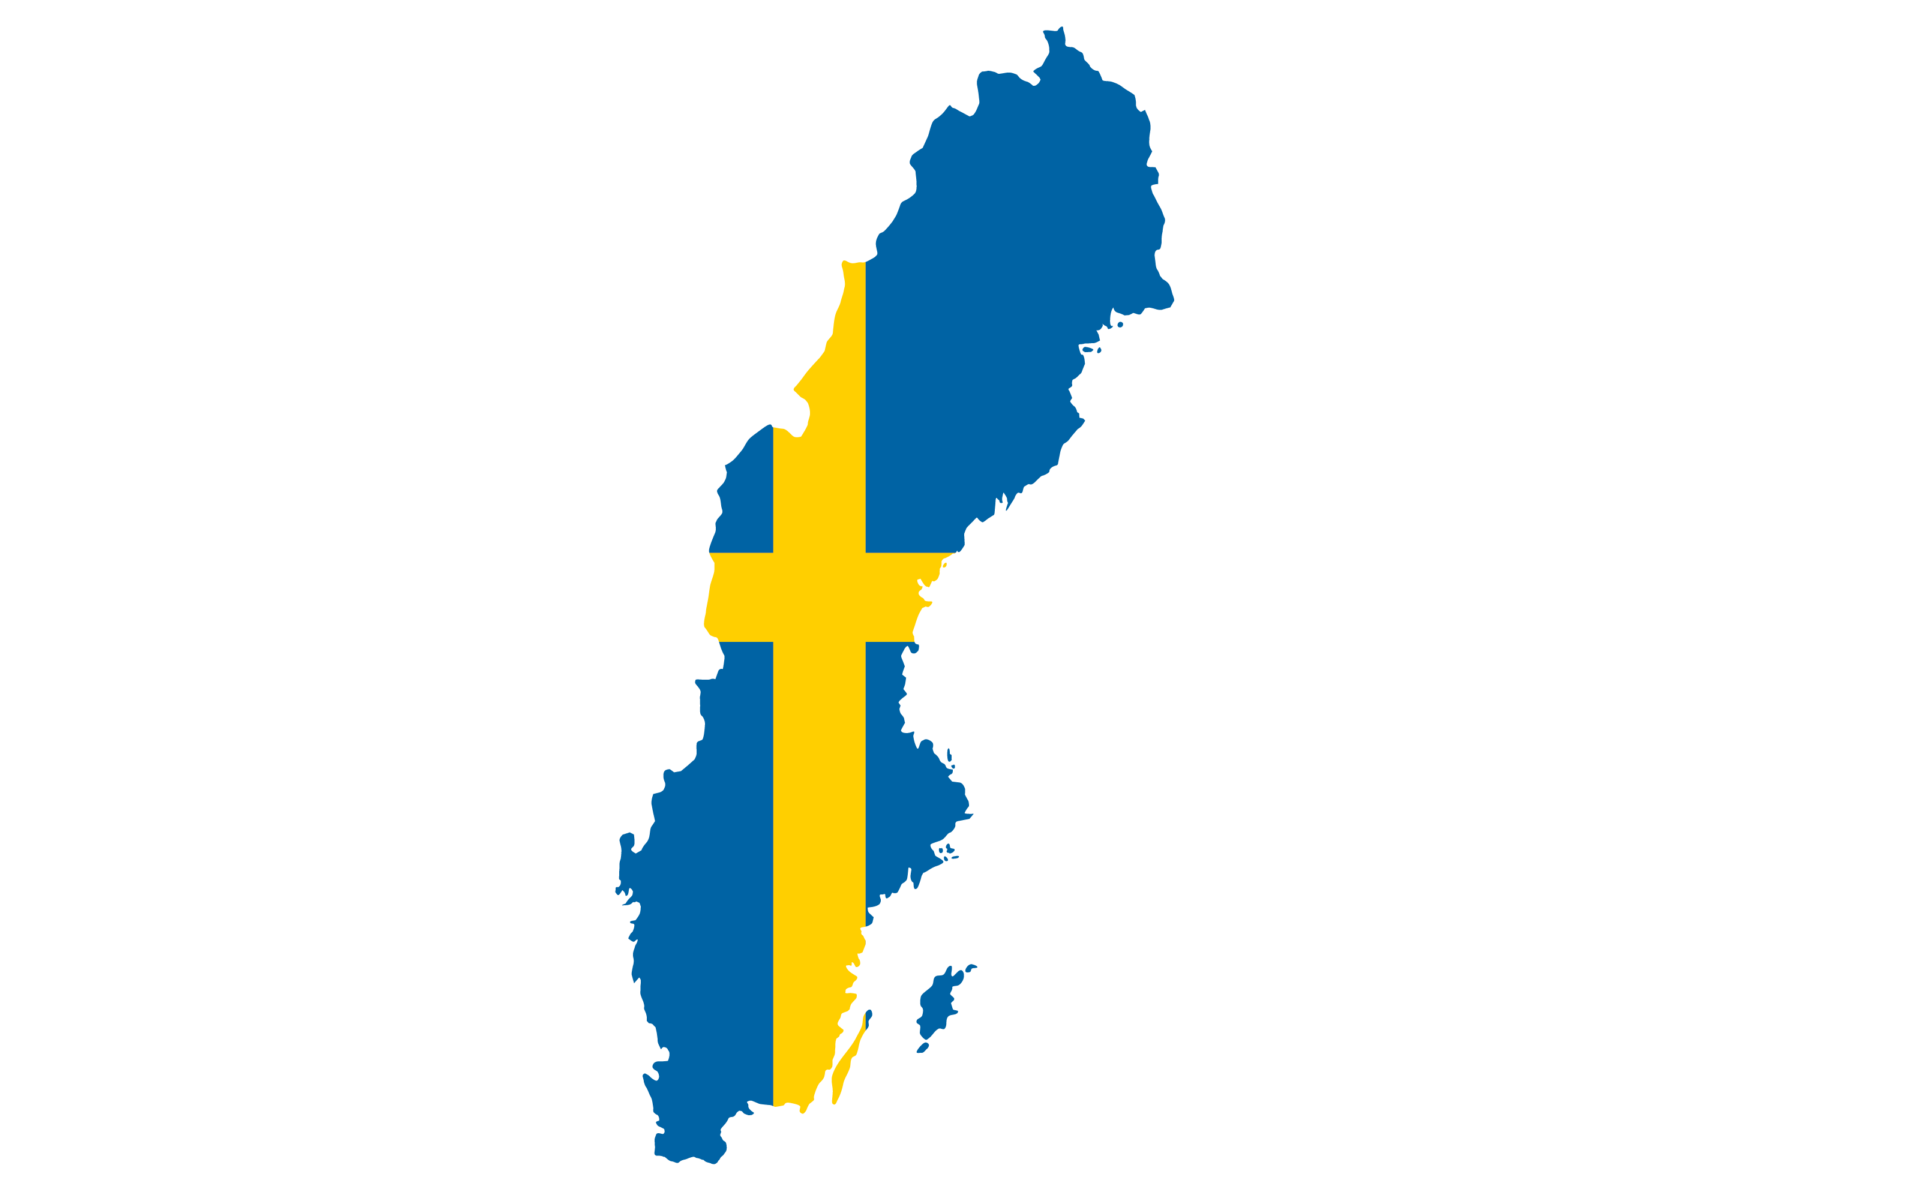 Health in Sweden